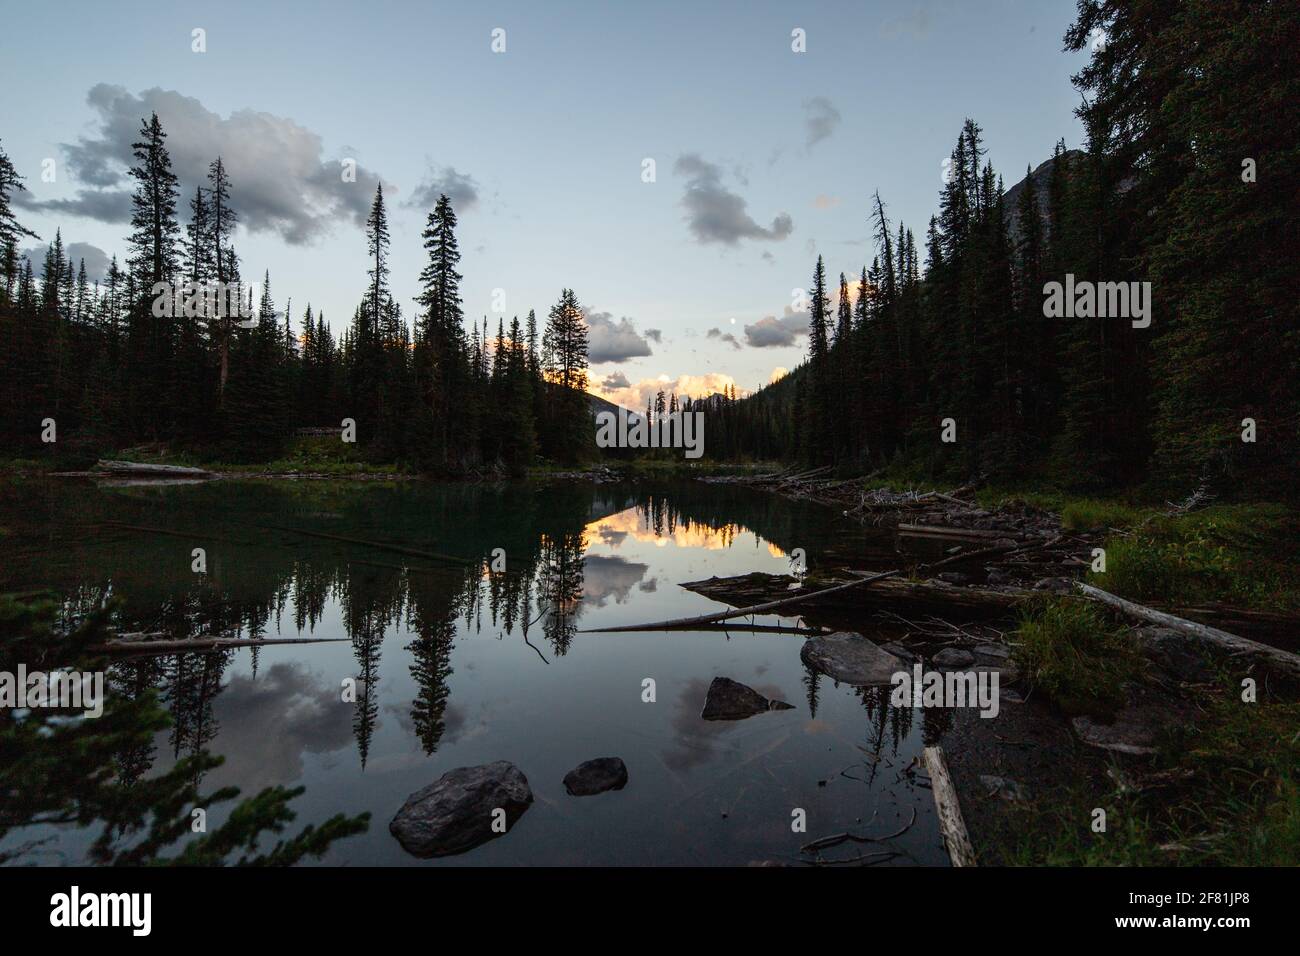 lago tranquilo que refleja un paisaje matutino en las montañas con pinos Foto de stock